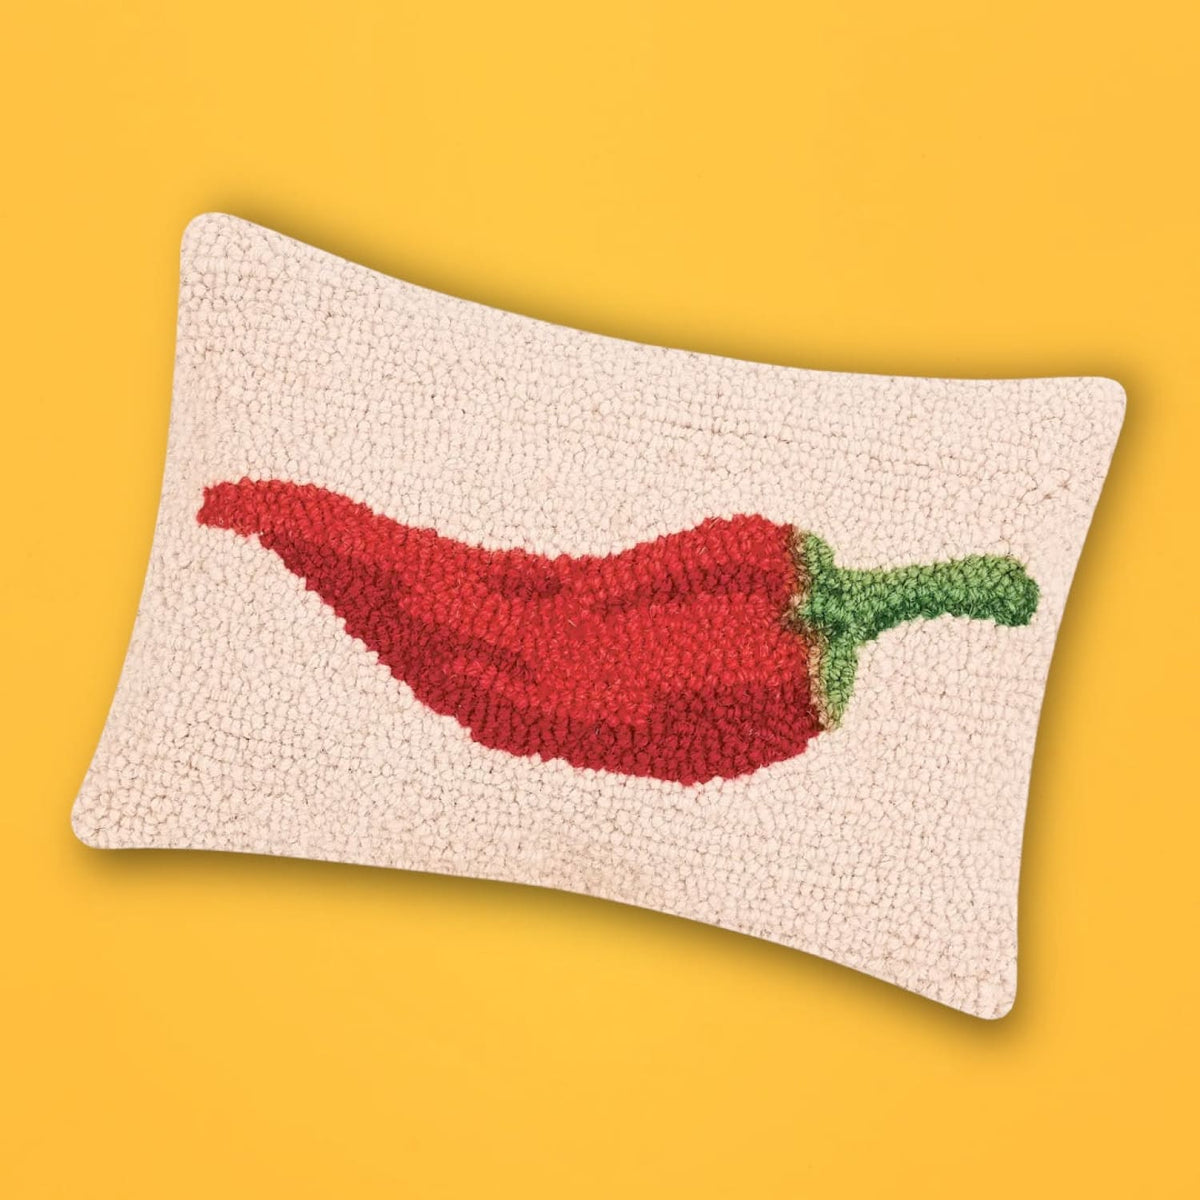 Red Chili Pepper Hook Pillow Web0324 - Webq124 Xpsd0324a